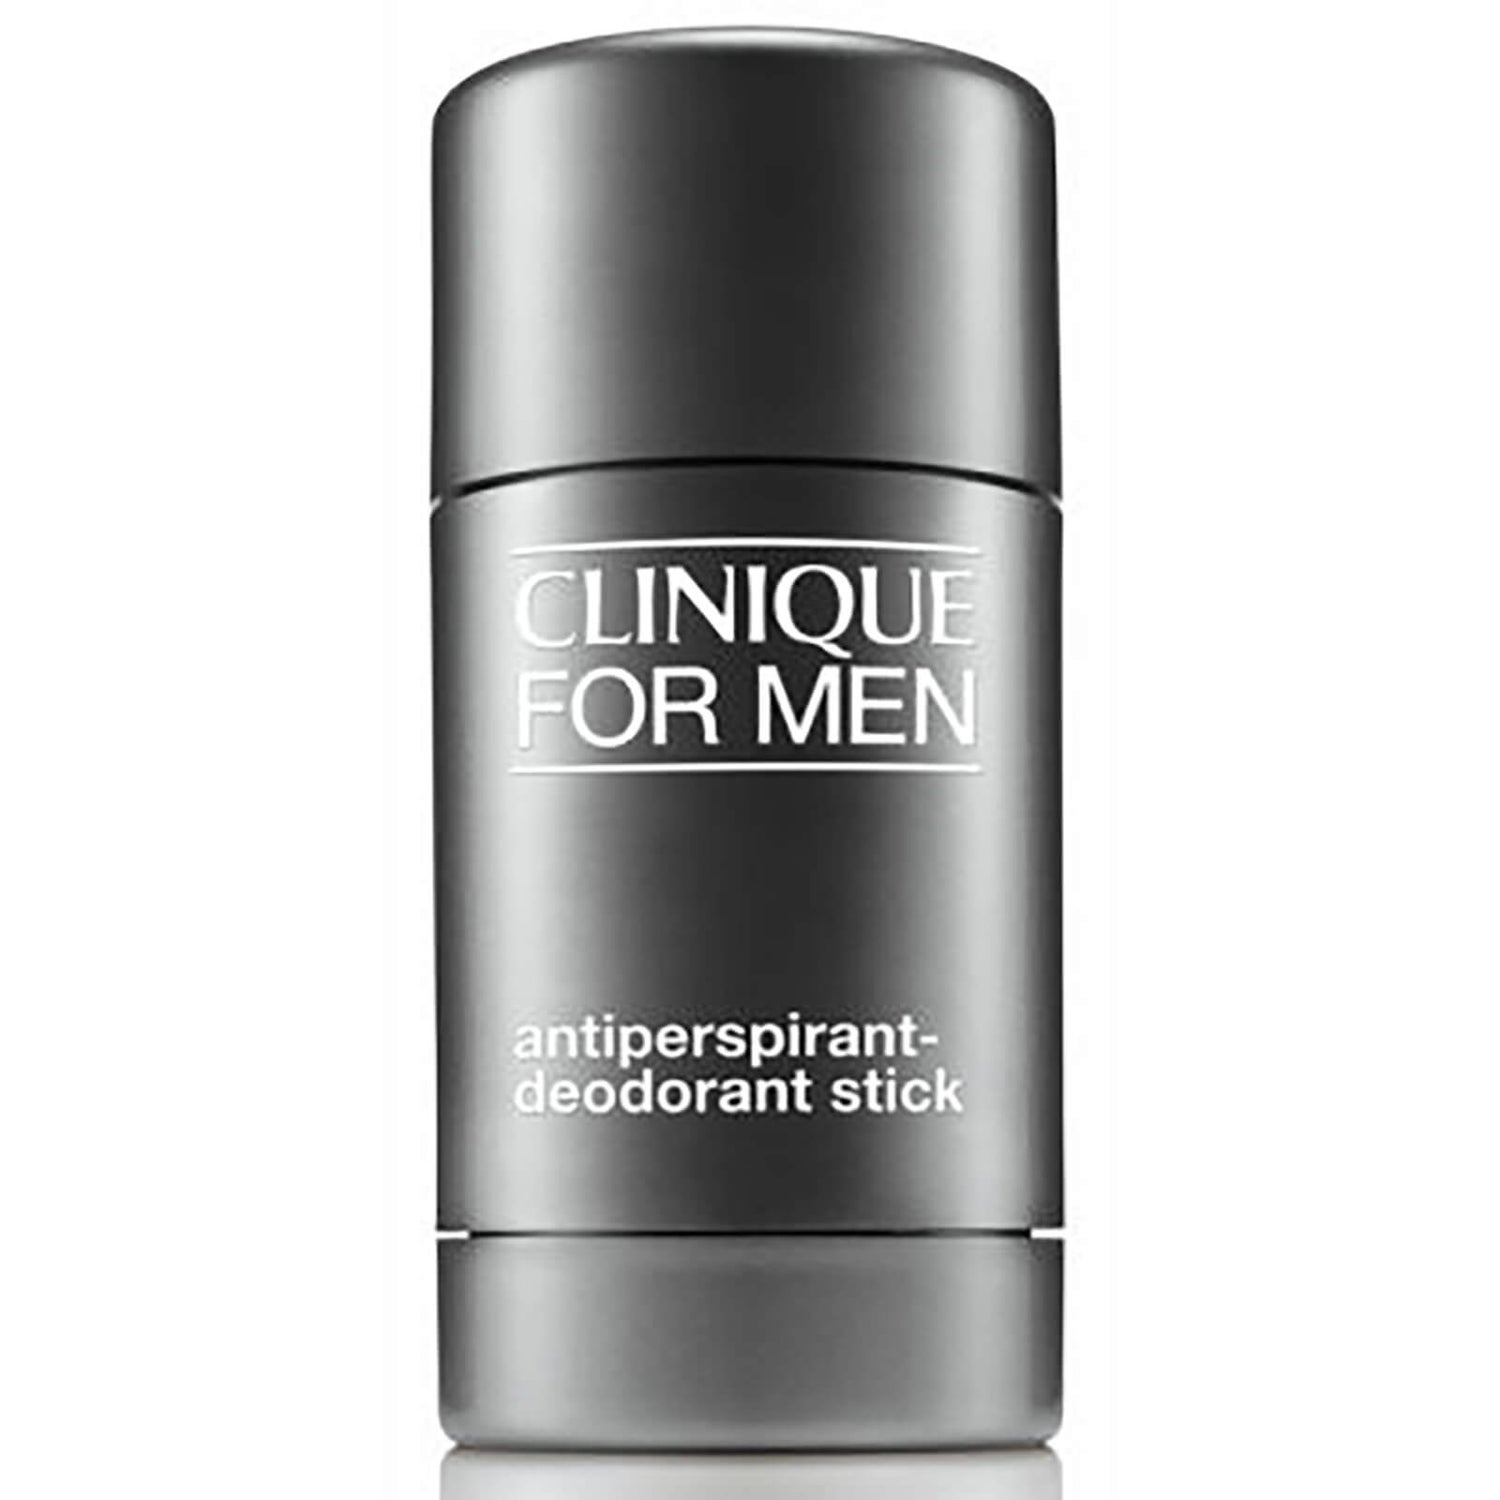 Clinique for Men deodorante stick anti-traspirante 75 g